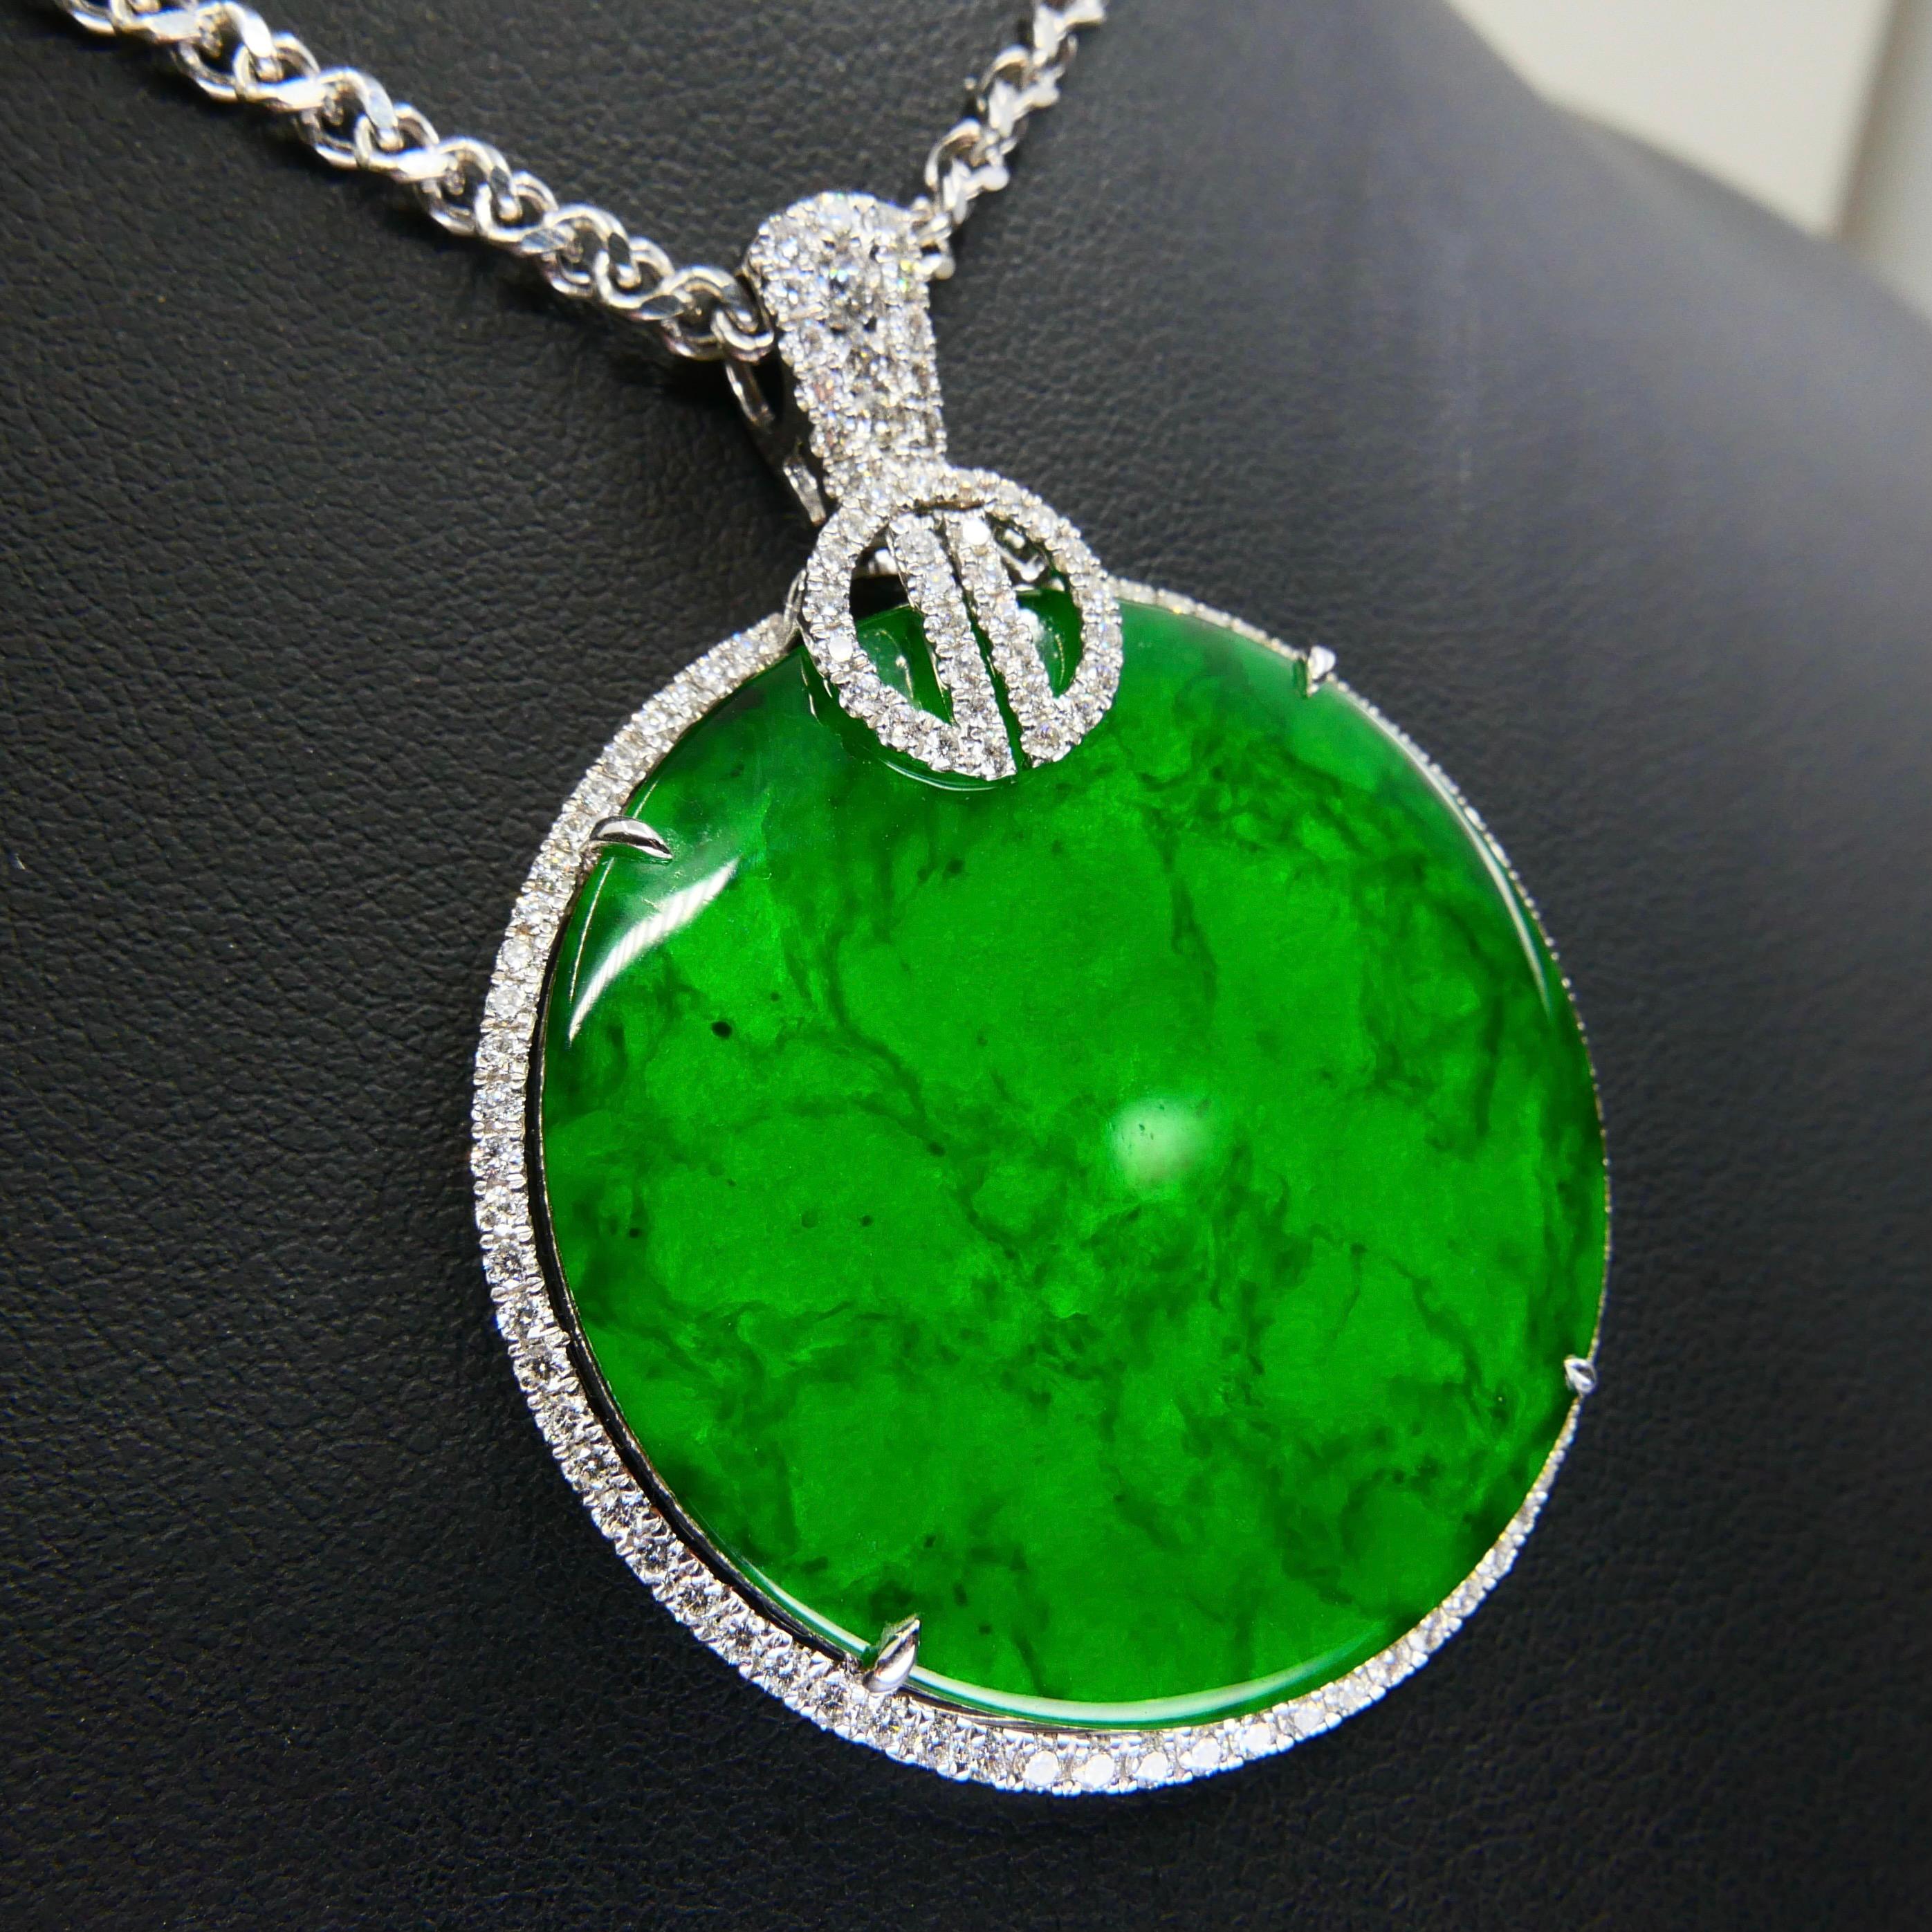 Certified Imperial & Apple Green Jadeite Jade Diamond Pendant, Sika Deer Pattern 2